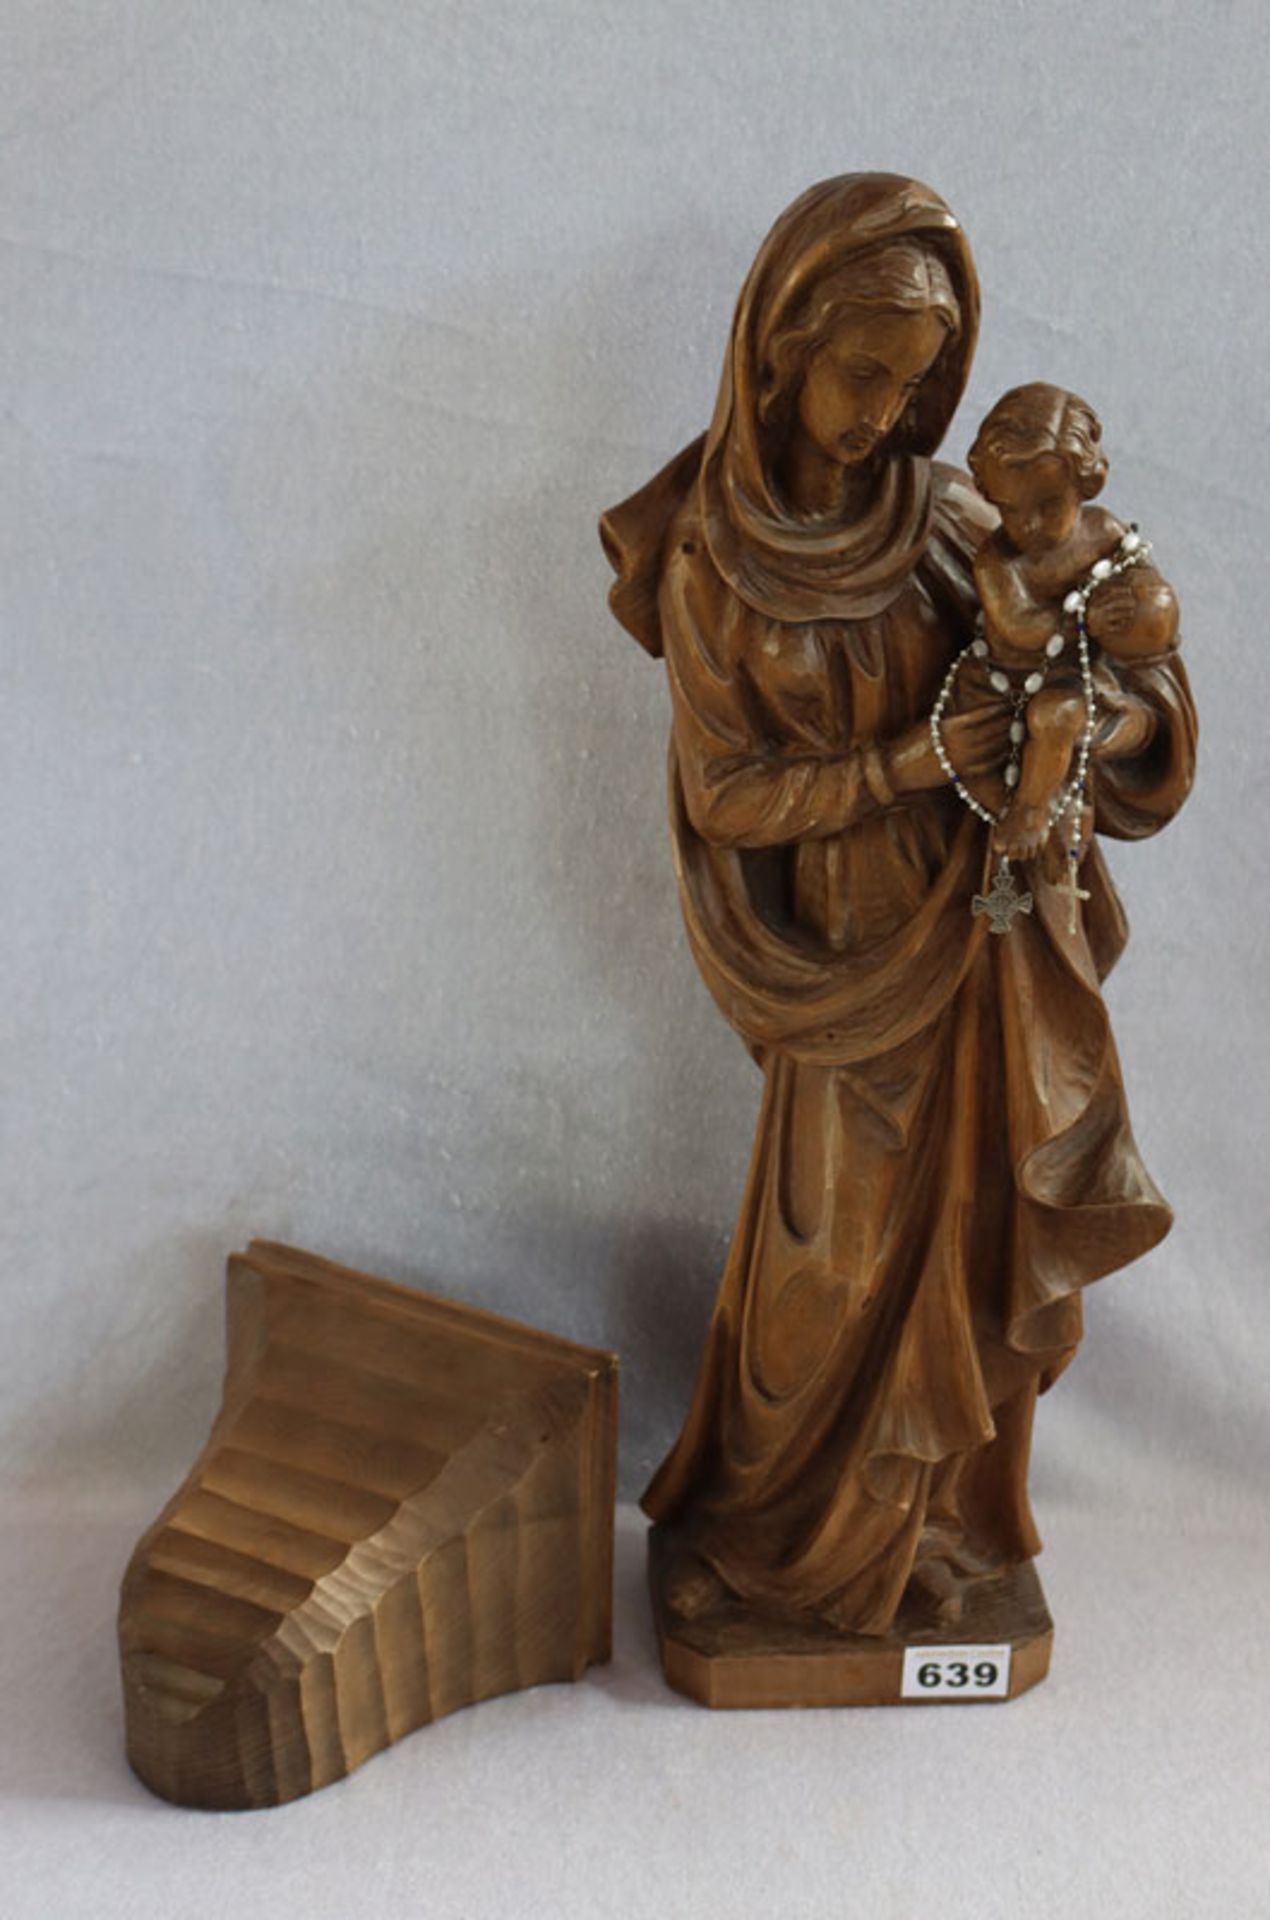 Holz Figurenskulptur 'Maria mit Kind', dunkel gebeizt, leicht bestossen, H 55 cm, und passender